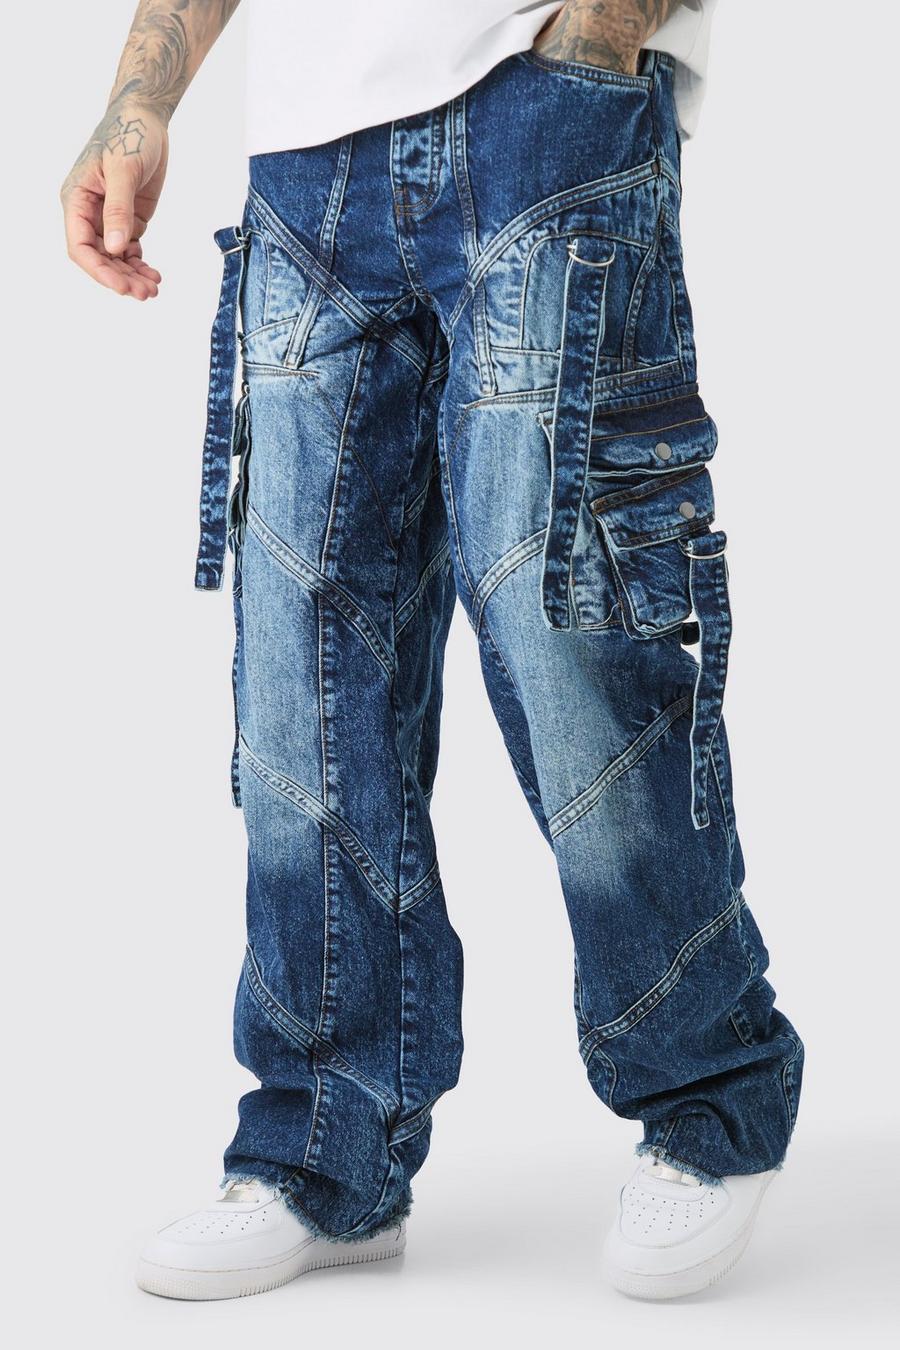 Indigo Tall Onbewerkte Baggy Jeans Met Bandjes En Gesp Detail